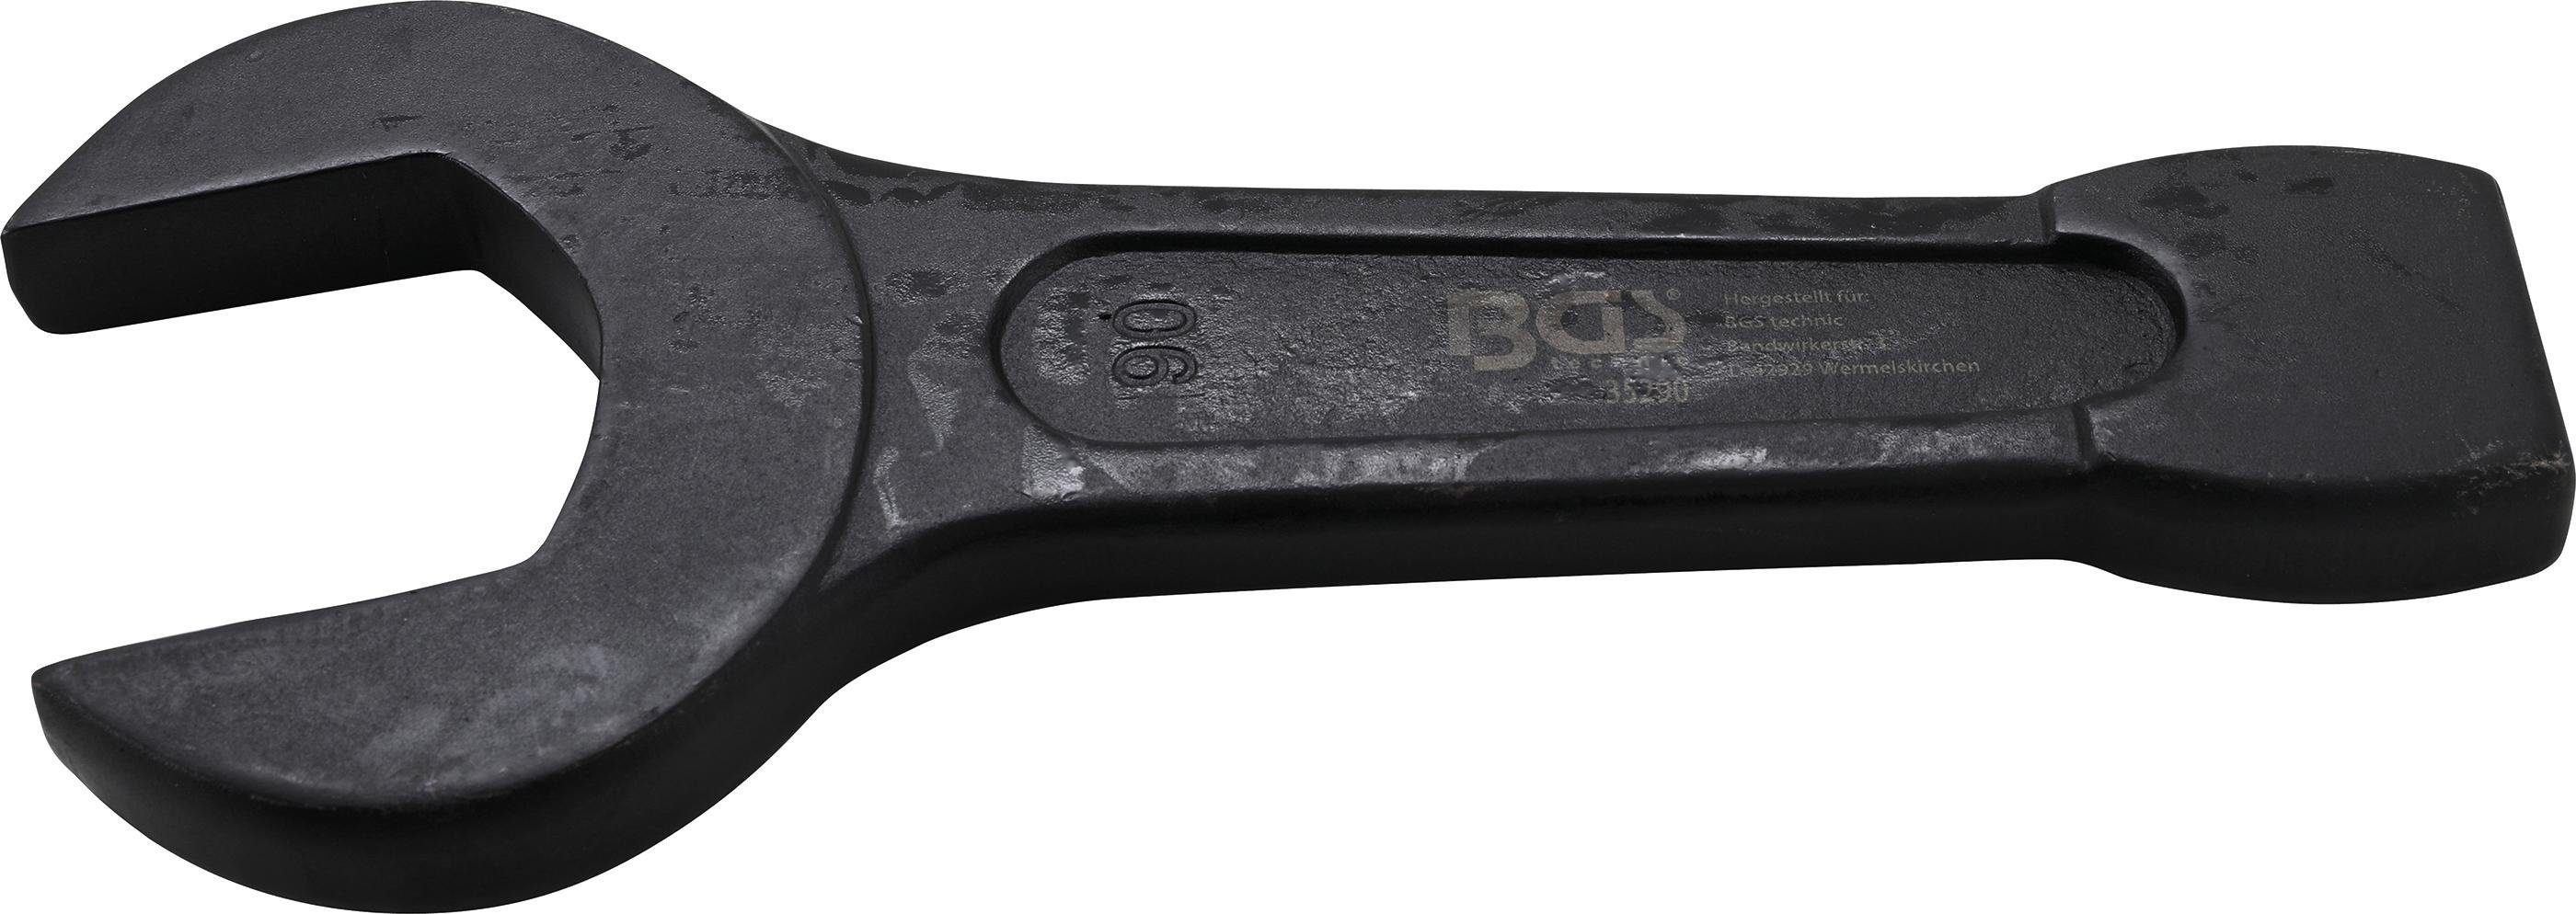 BGS technic Maulschlüssel Schlag-Maulschlüssel, SW 90 mm